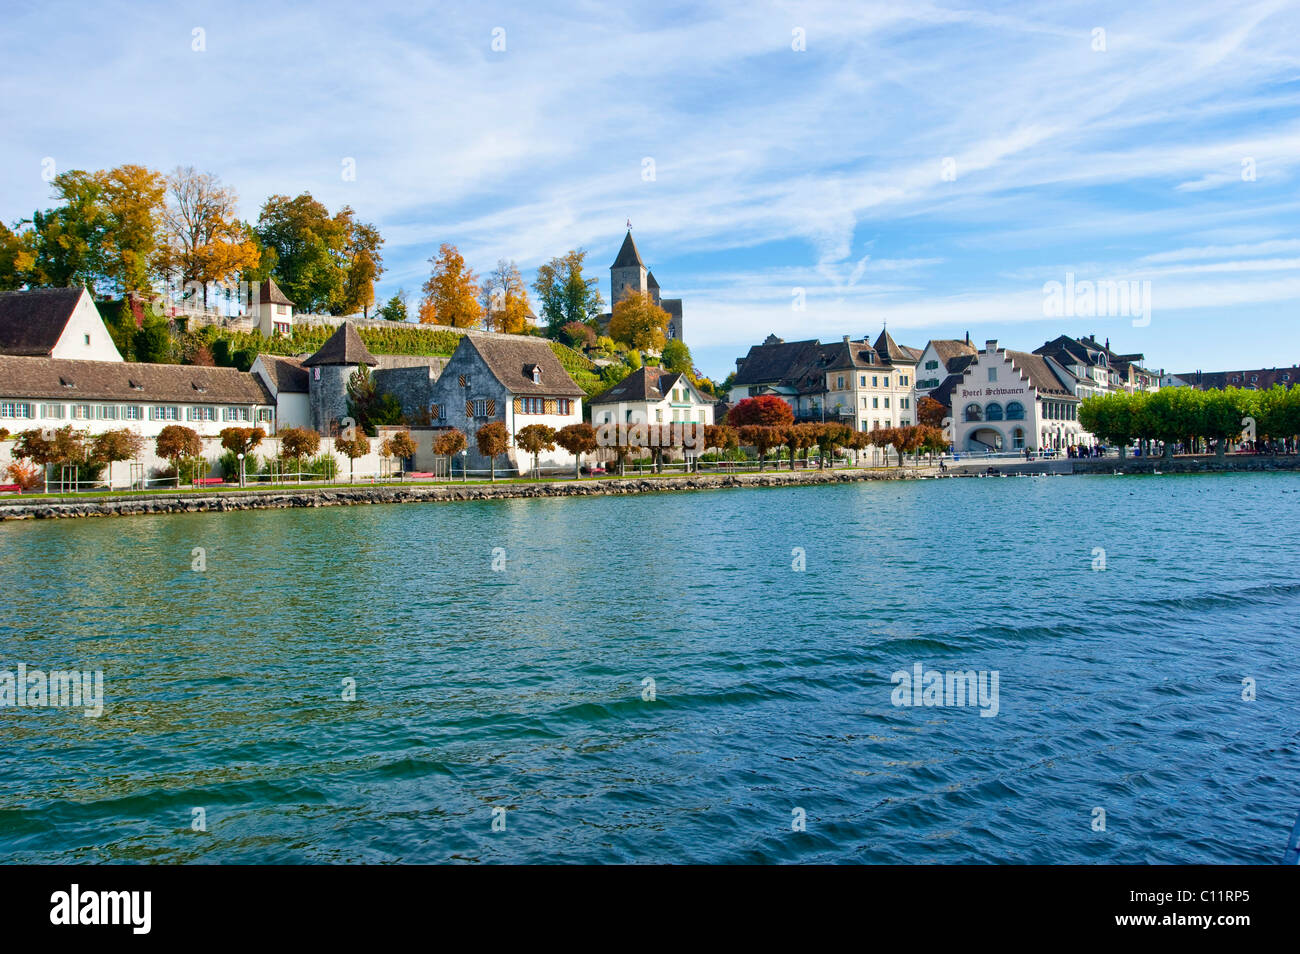 Le lac de Zurich, vieille ville, château, Rapperswil, Sankt Gallen, Suisse, Europe Banque D'Images